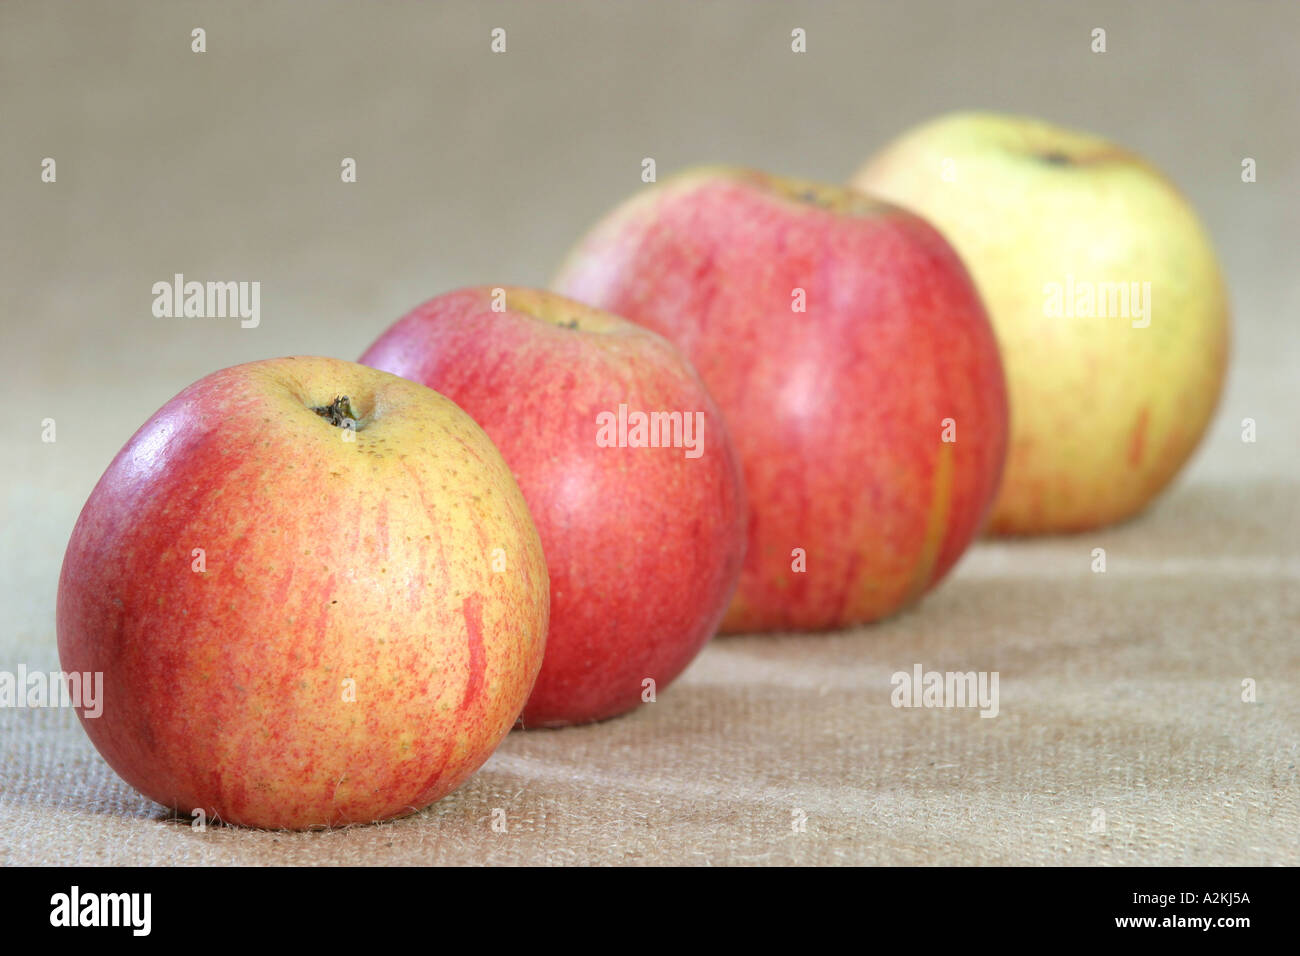 Apple ordina Rheinischer Bohnapfel Foto Stock